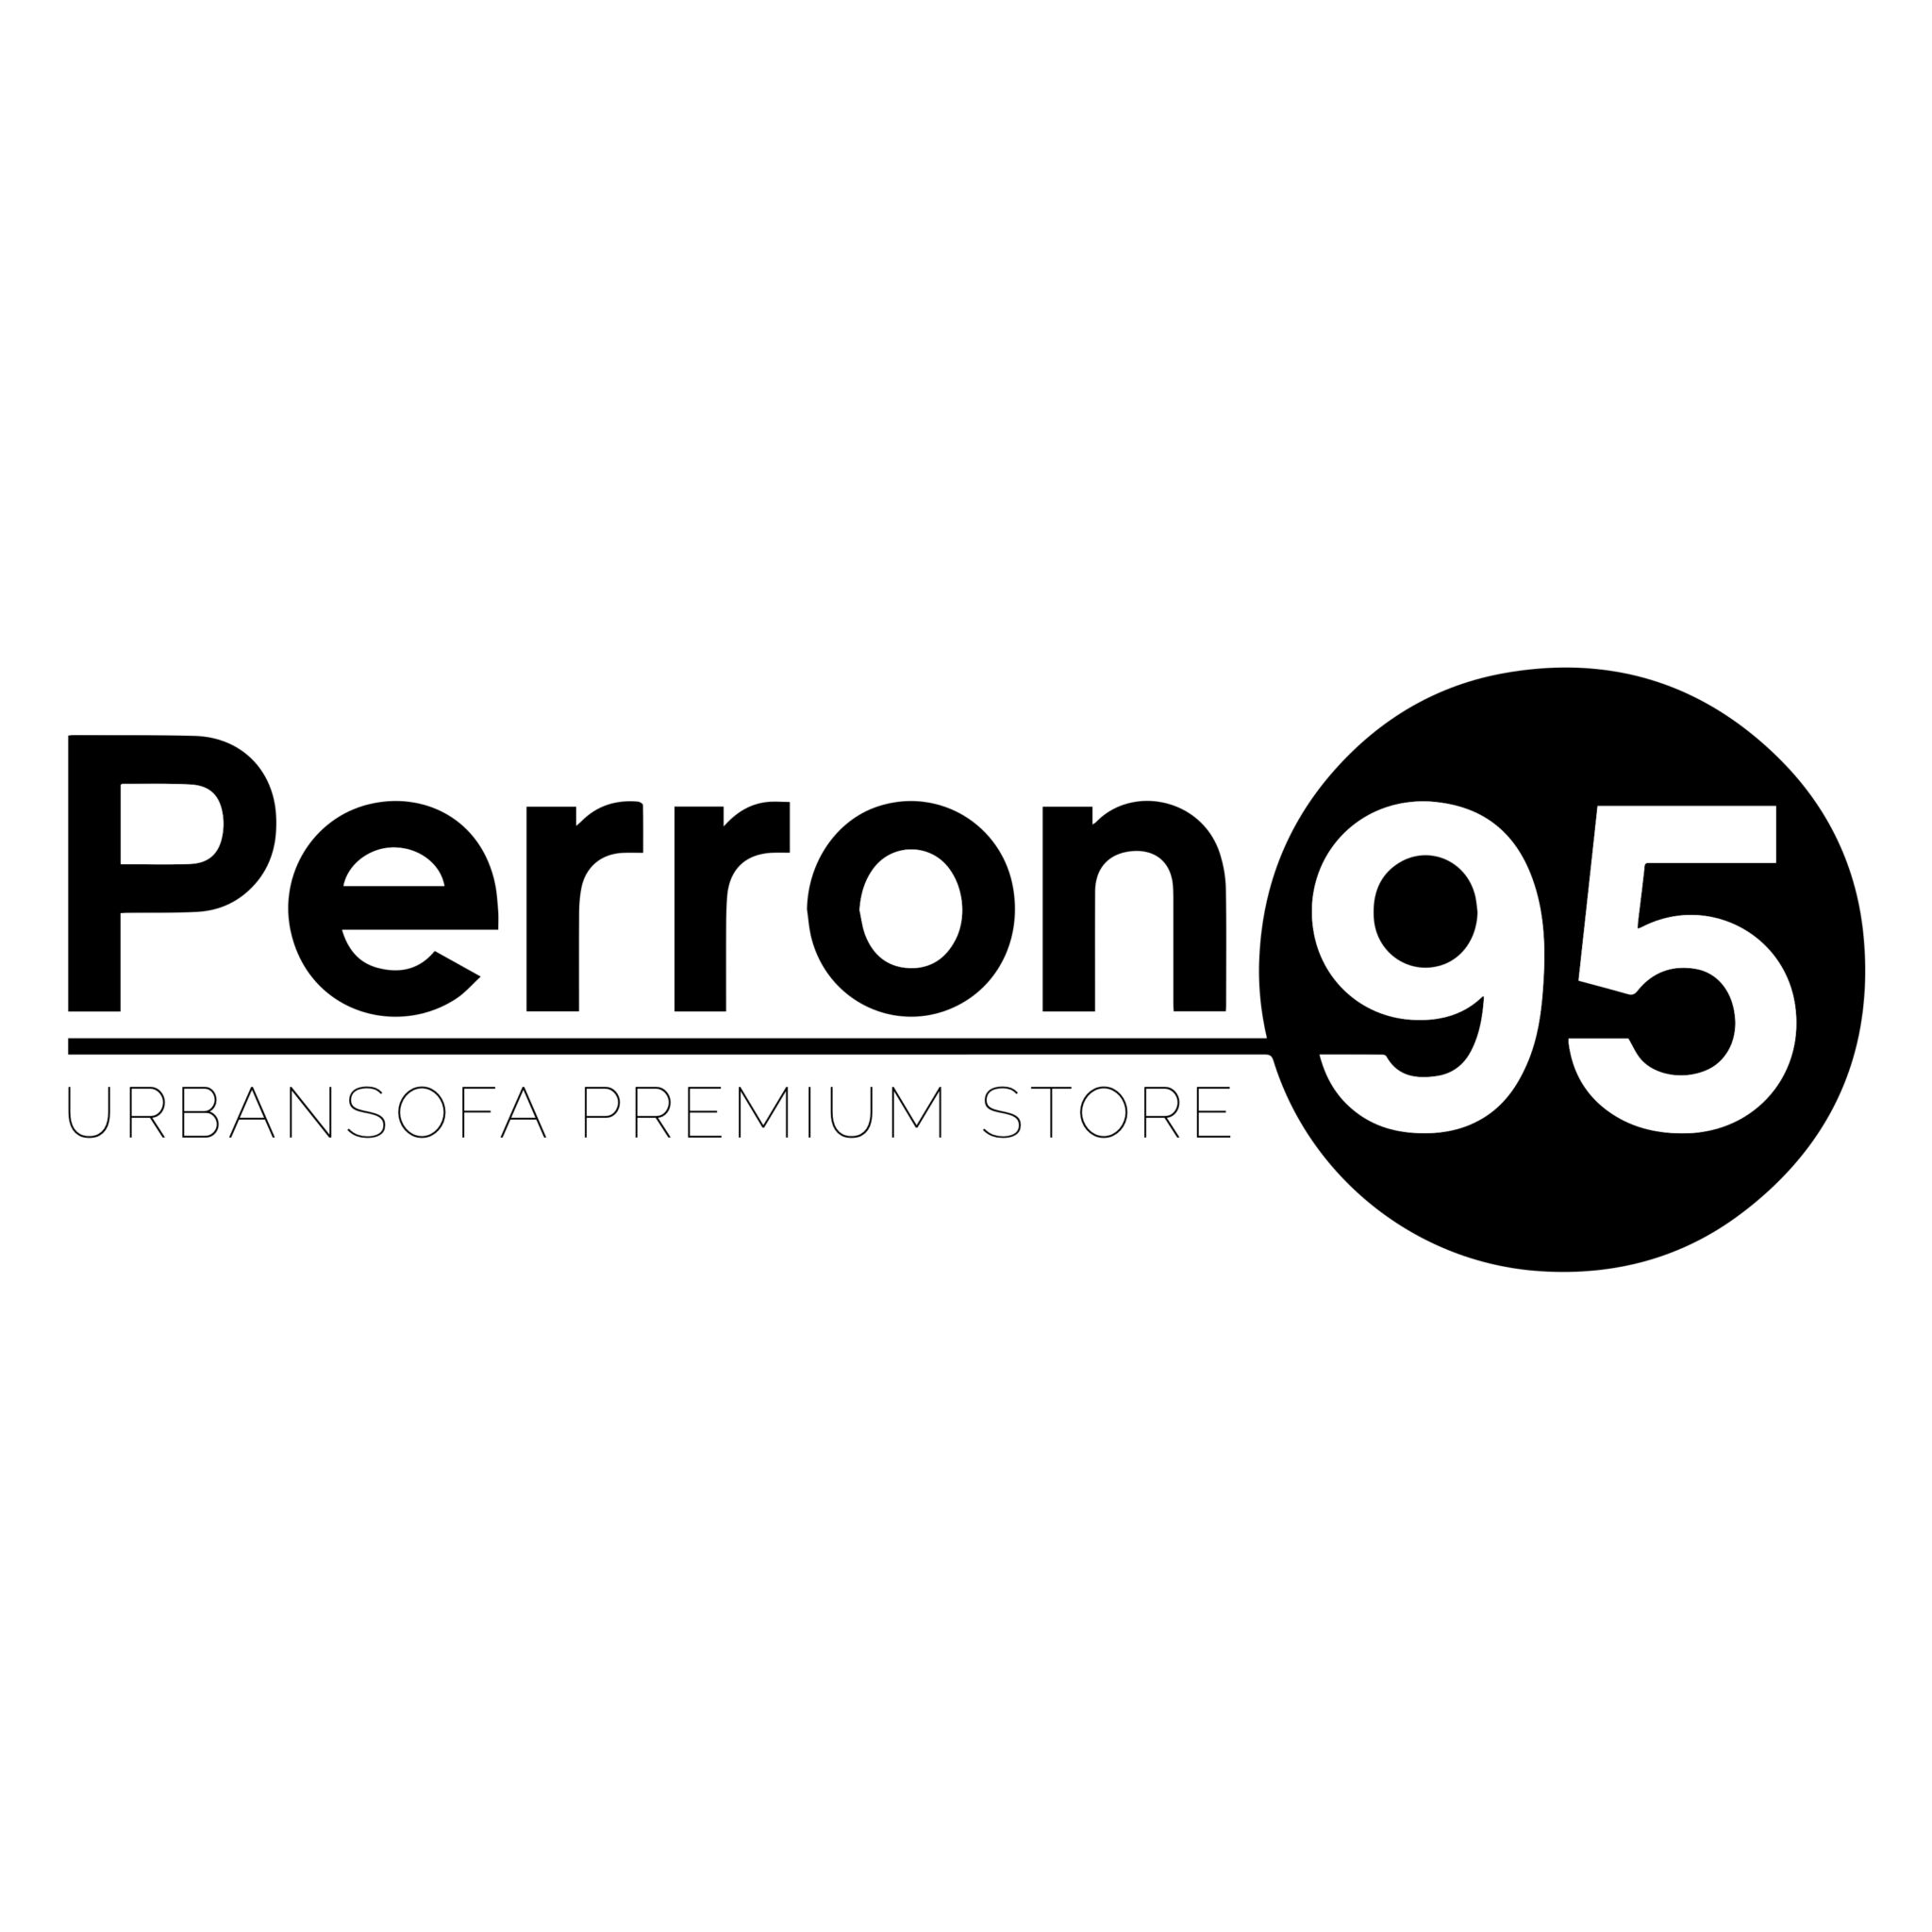 Perron 95